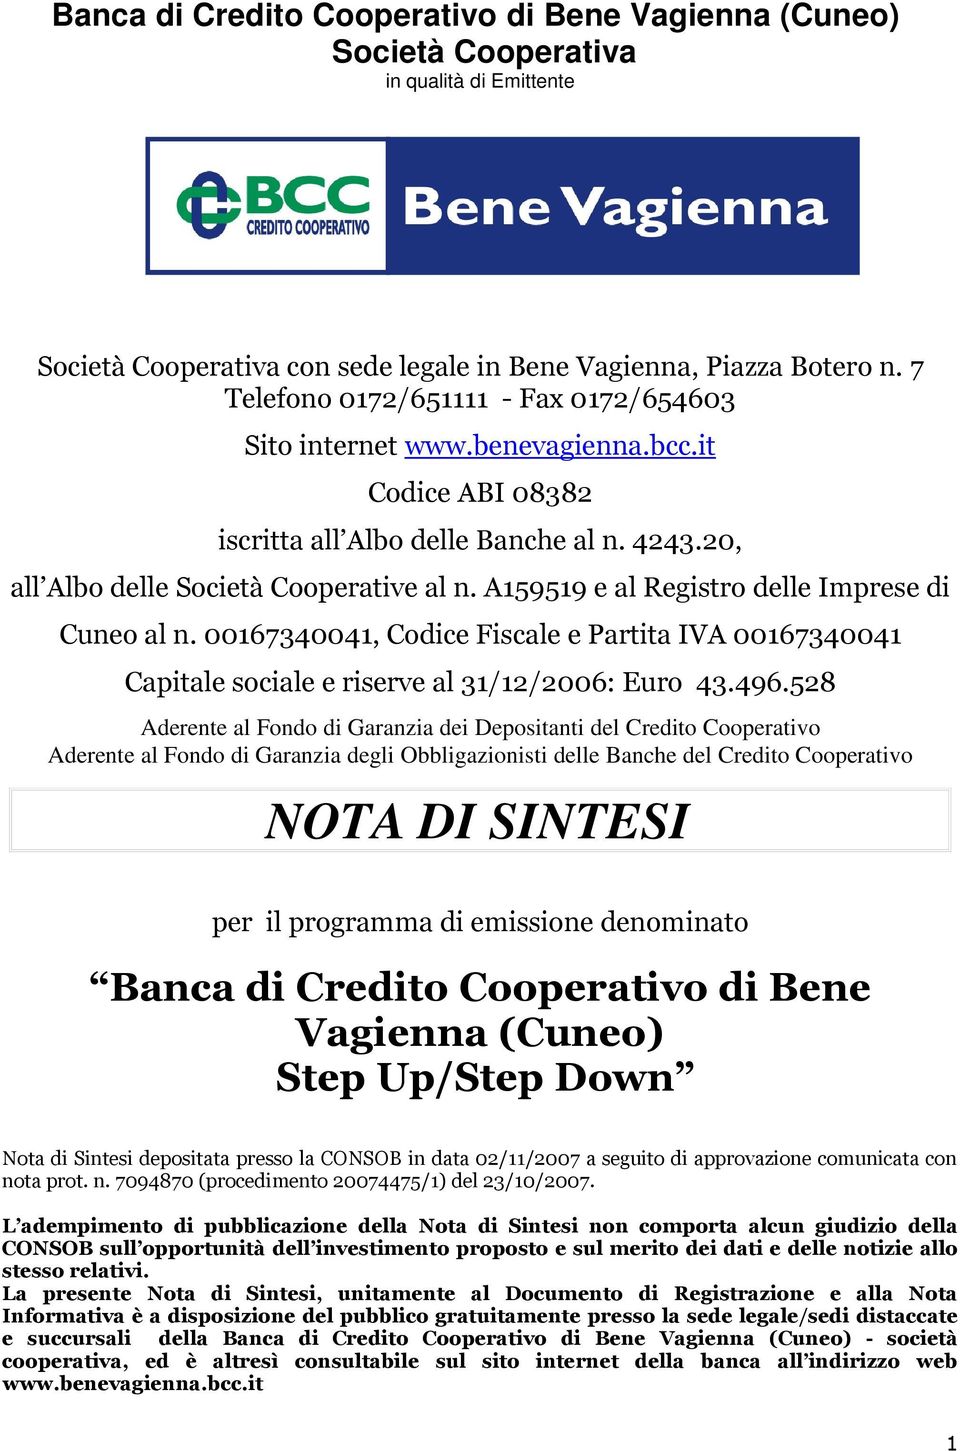 A159519 e al Registro delle Imprese di Cuneo al n. 00167340041, Codice Fiscale e Partita IVA 00167340041 Capitale sociale e riserve al 31/12/2006: Euro 43.496.